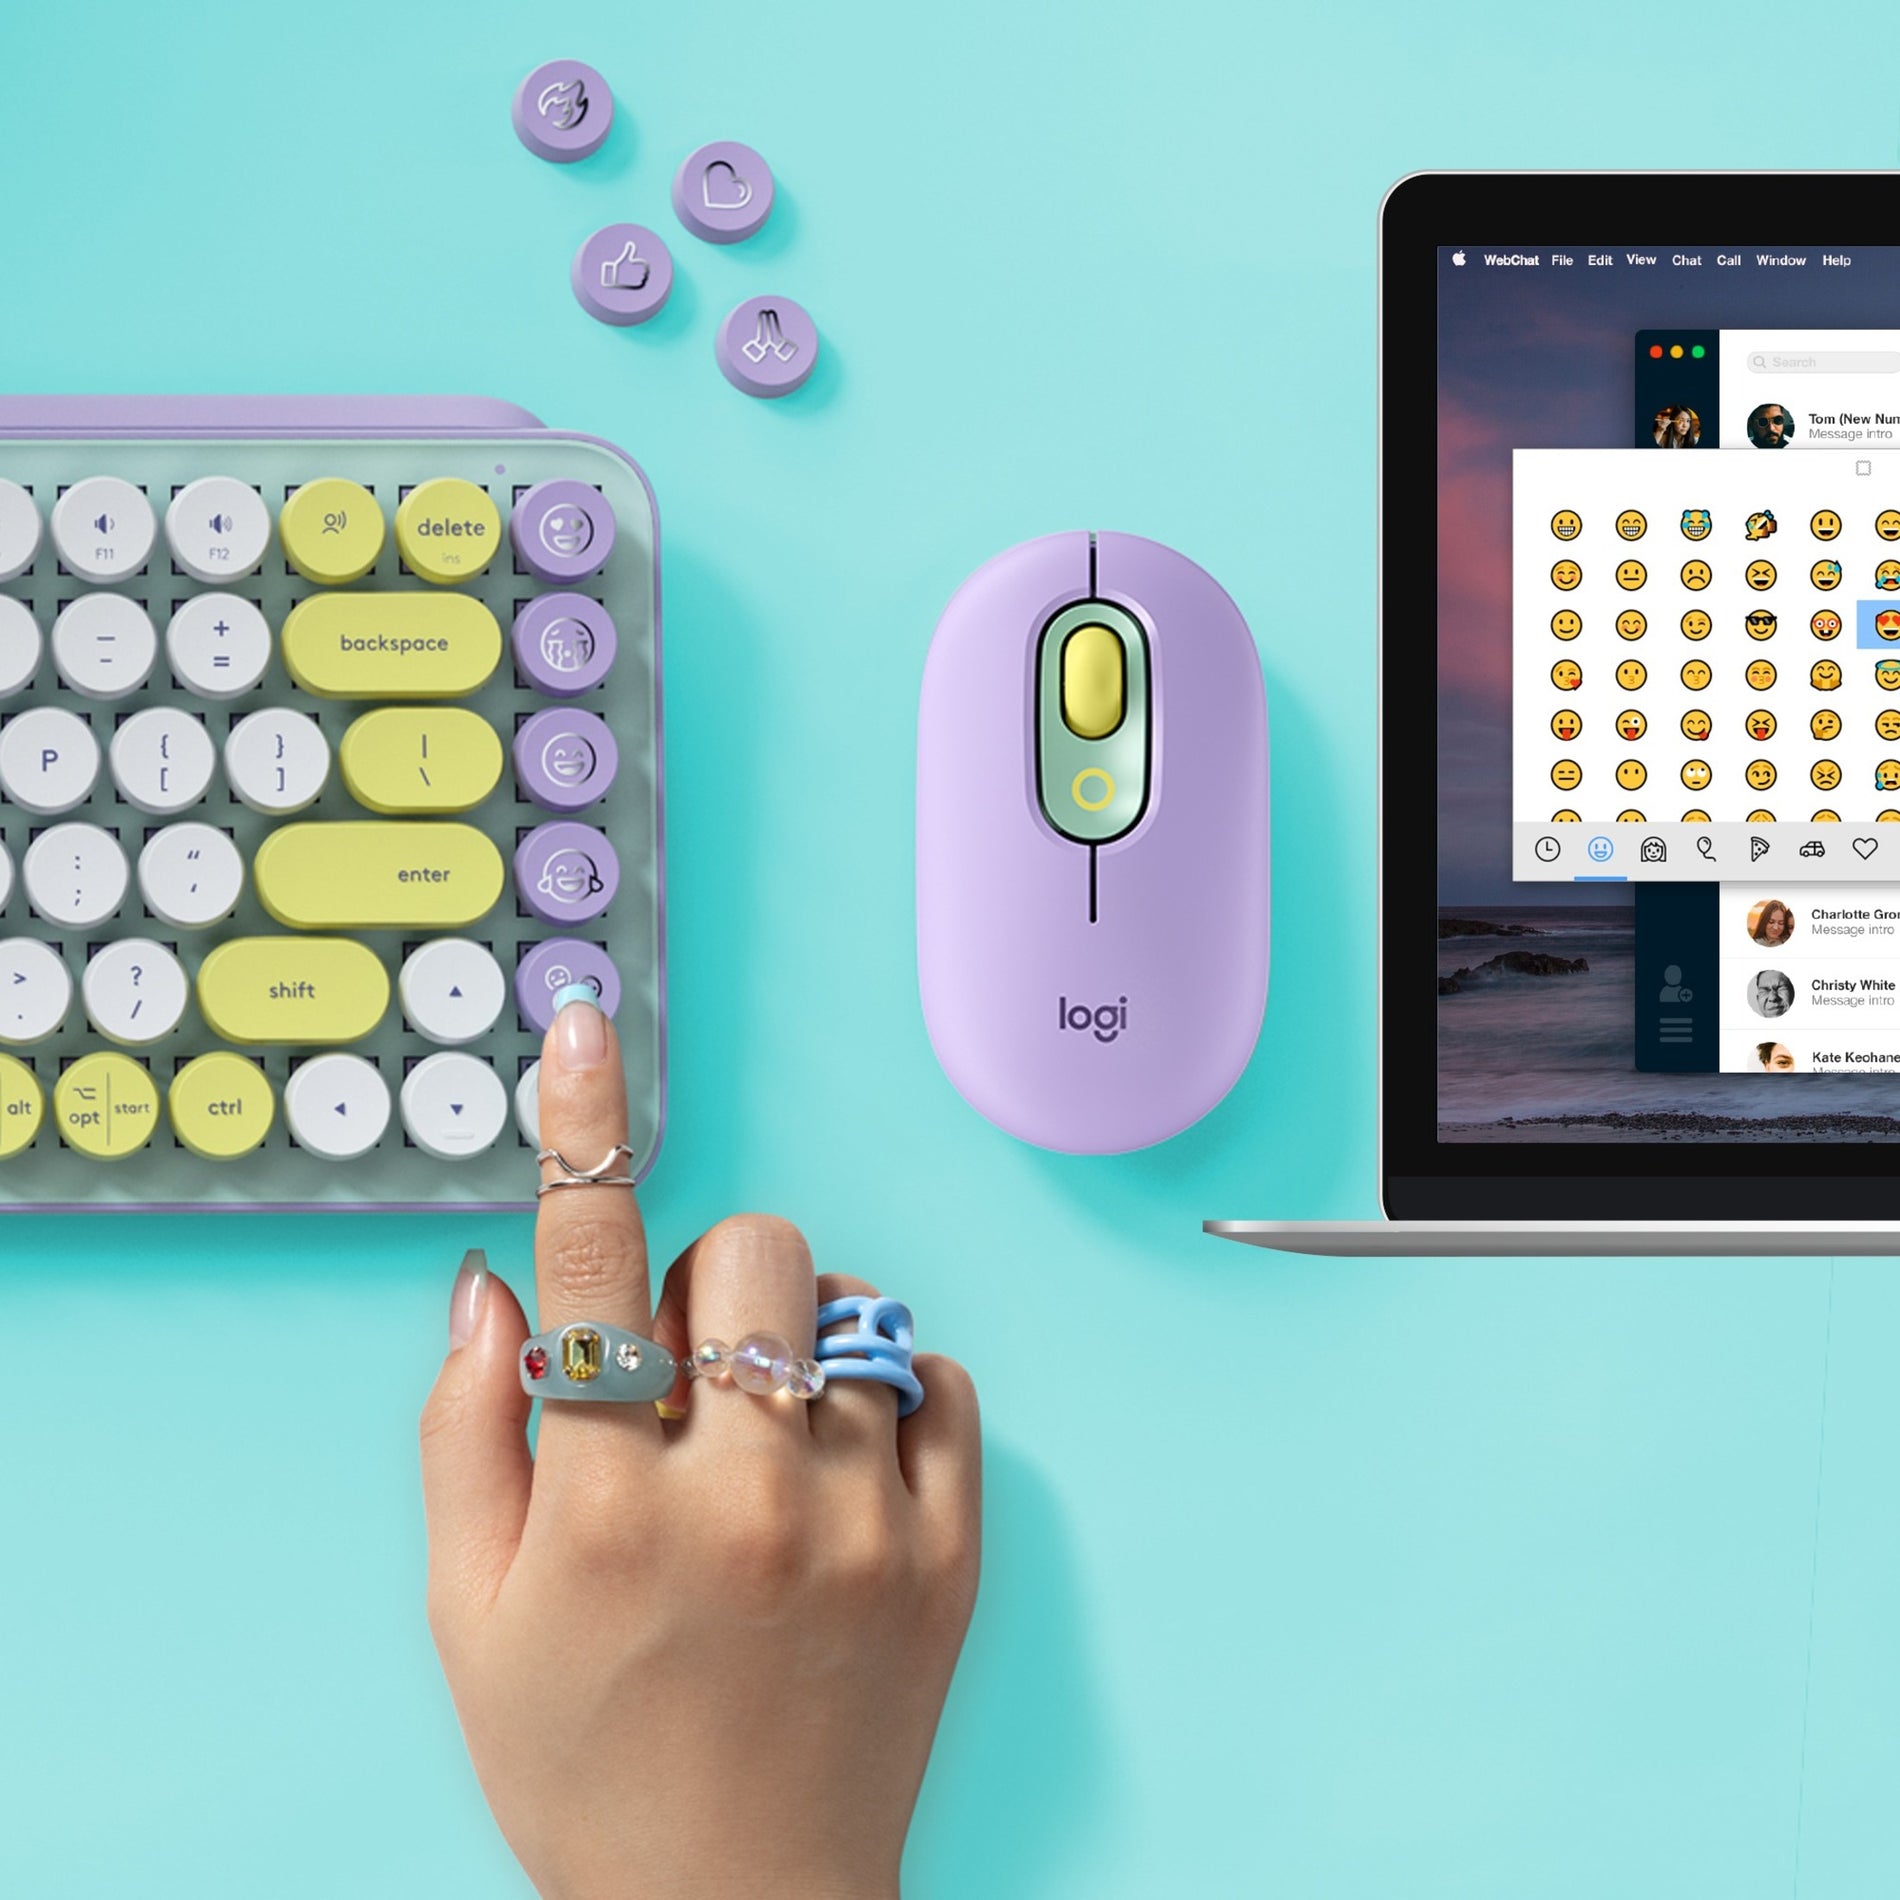 Logitech 920-010708 POP Keys Wireless Mechanical Keyboard With Emoji Keys - Daydream Mint, Express Yourself with Customizable Emoji Keys